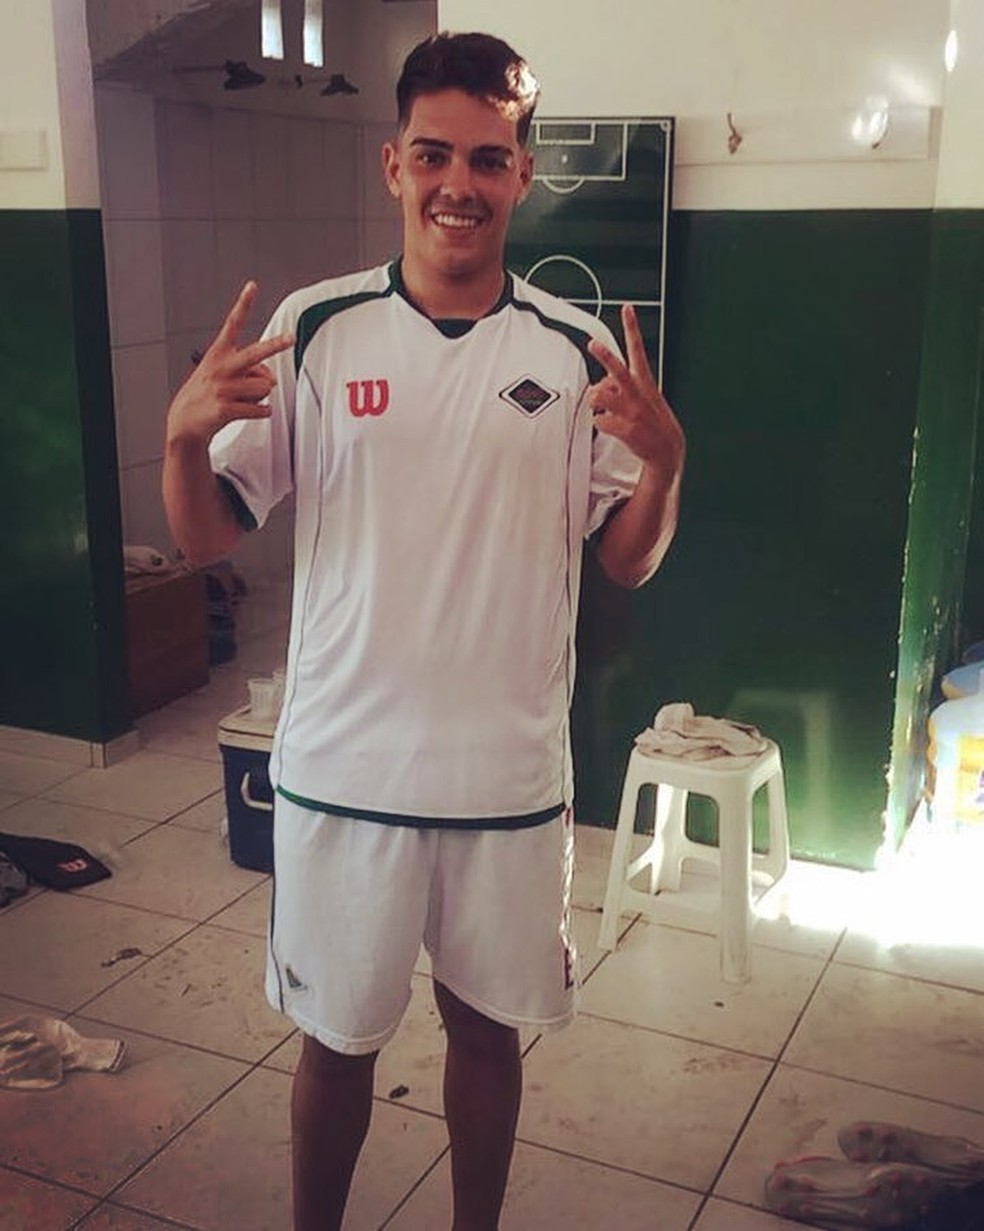 Filho de brasileiro ídolo do Benfica acerta com time do futebol português, serra lagos norte